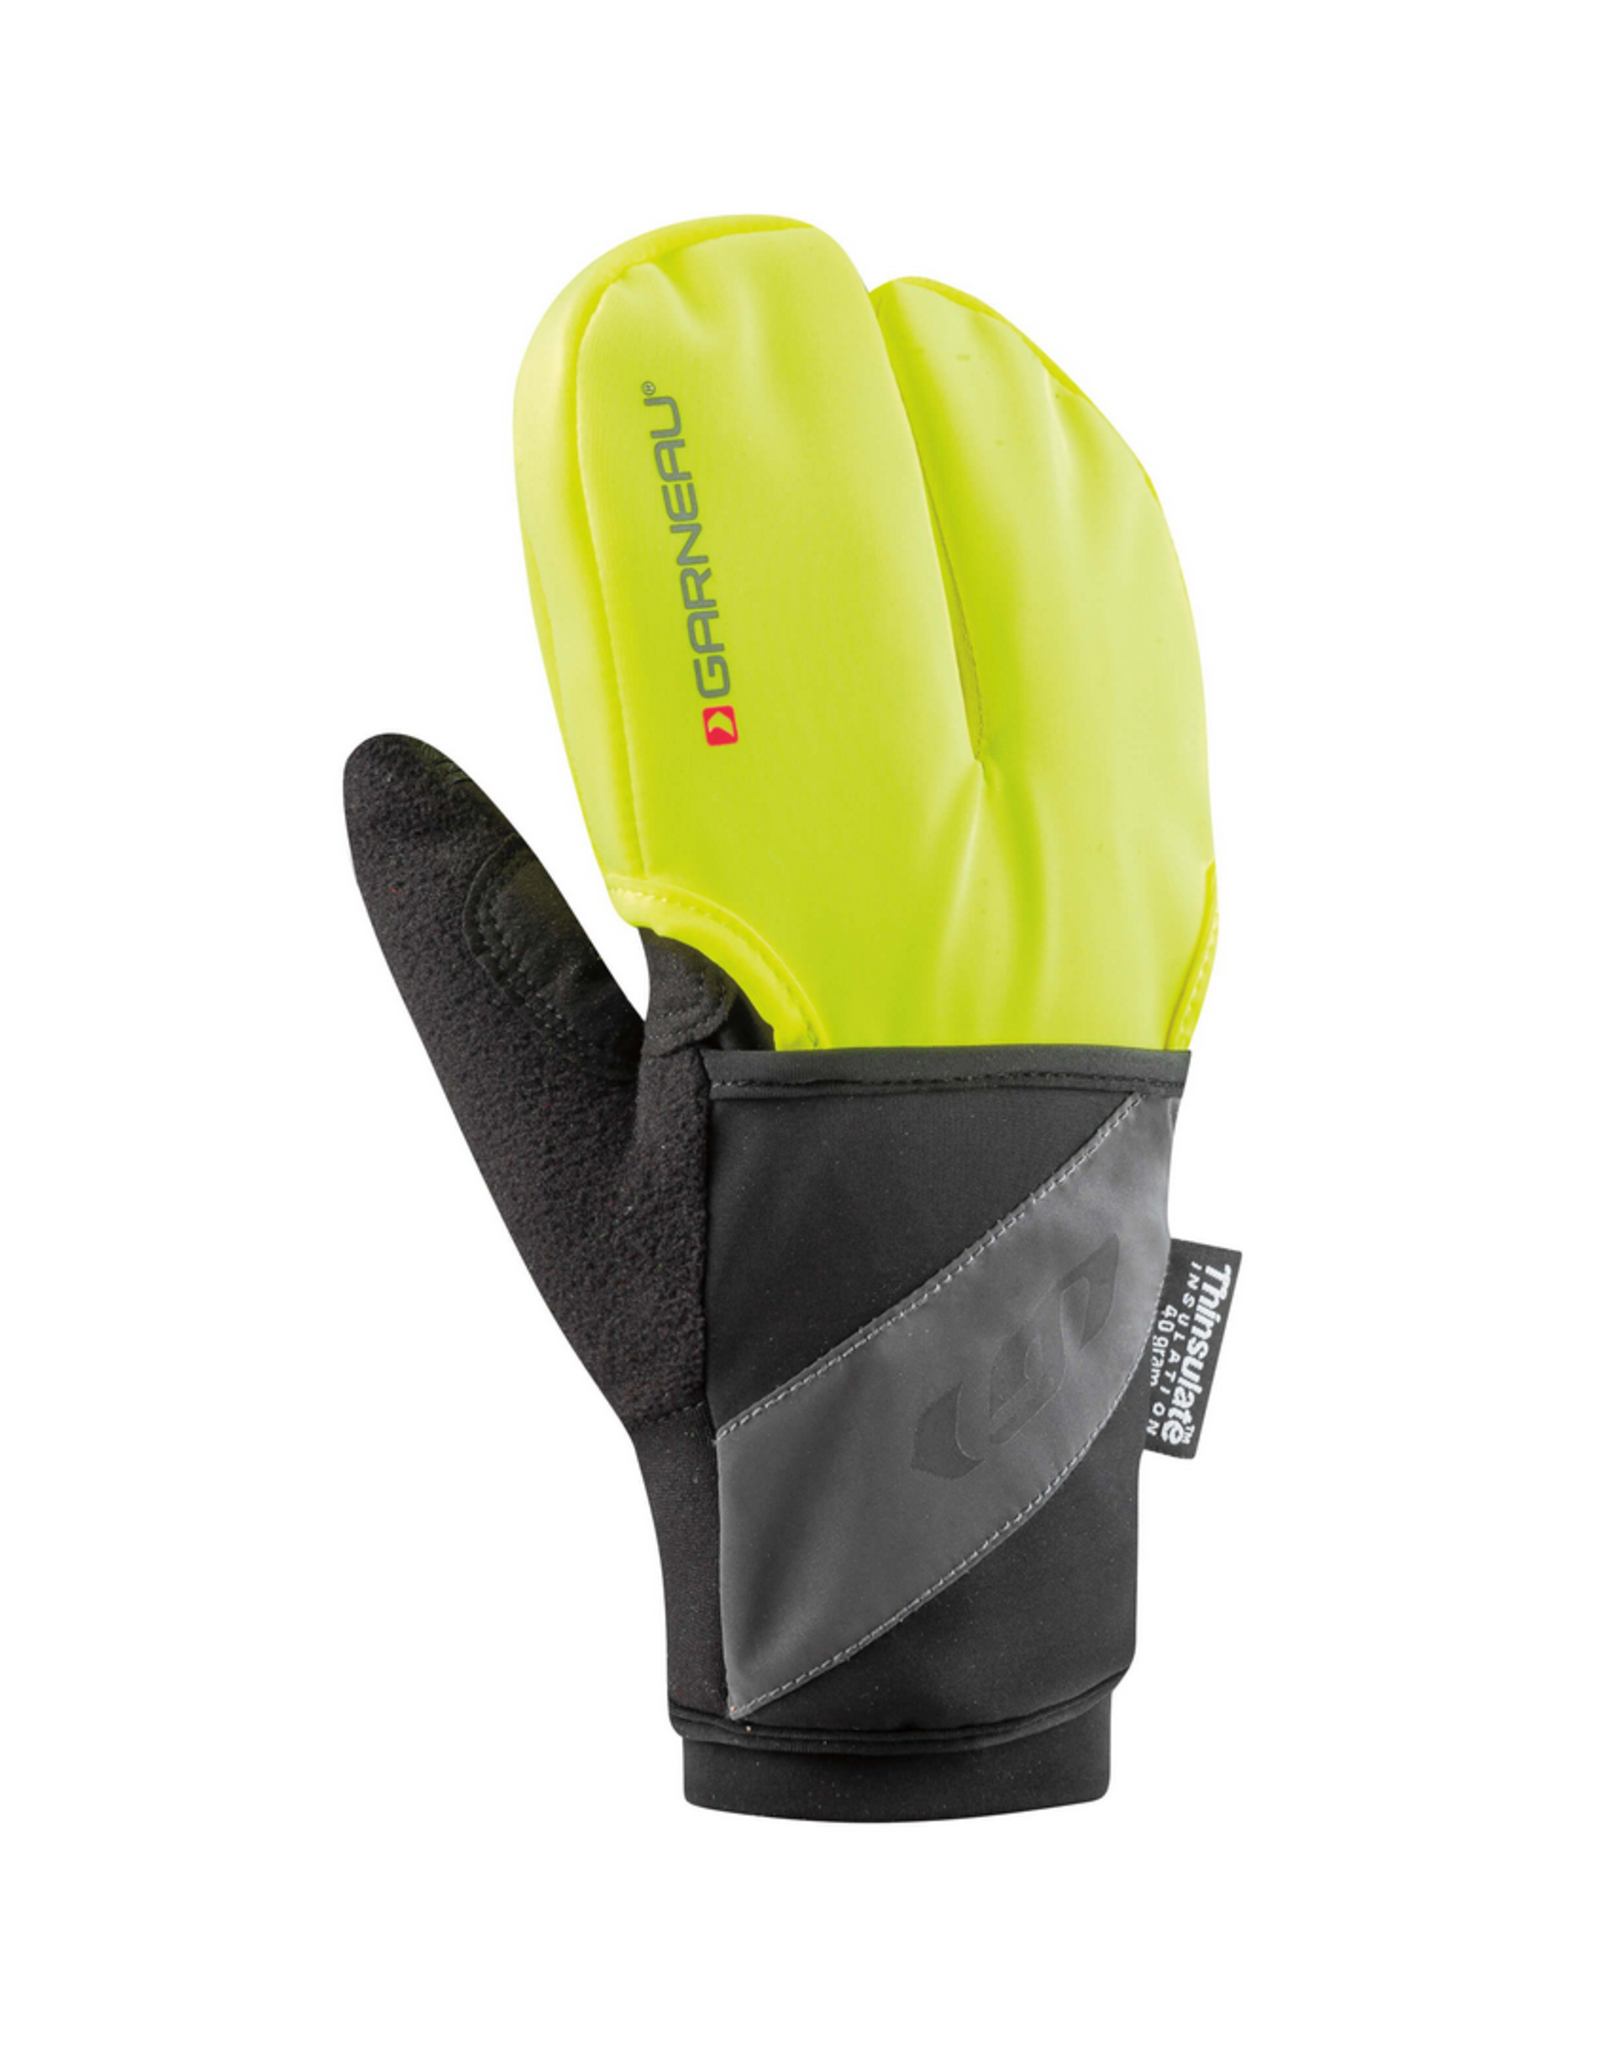 Garneau GARNEAU Super Prestige 2 Cycling Gloves